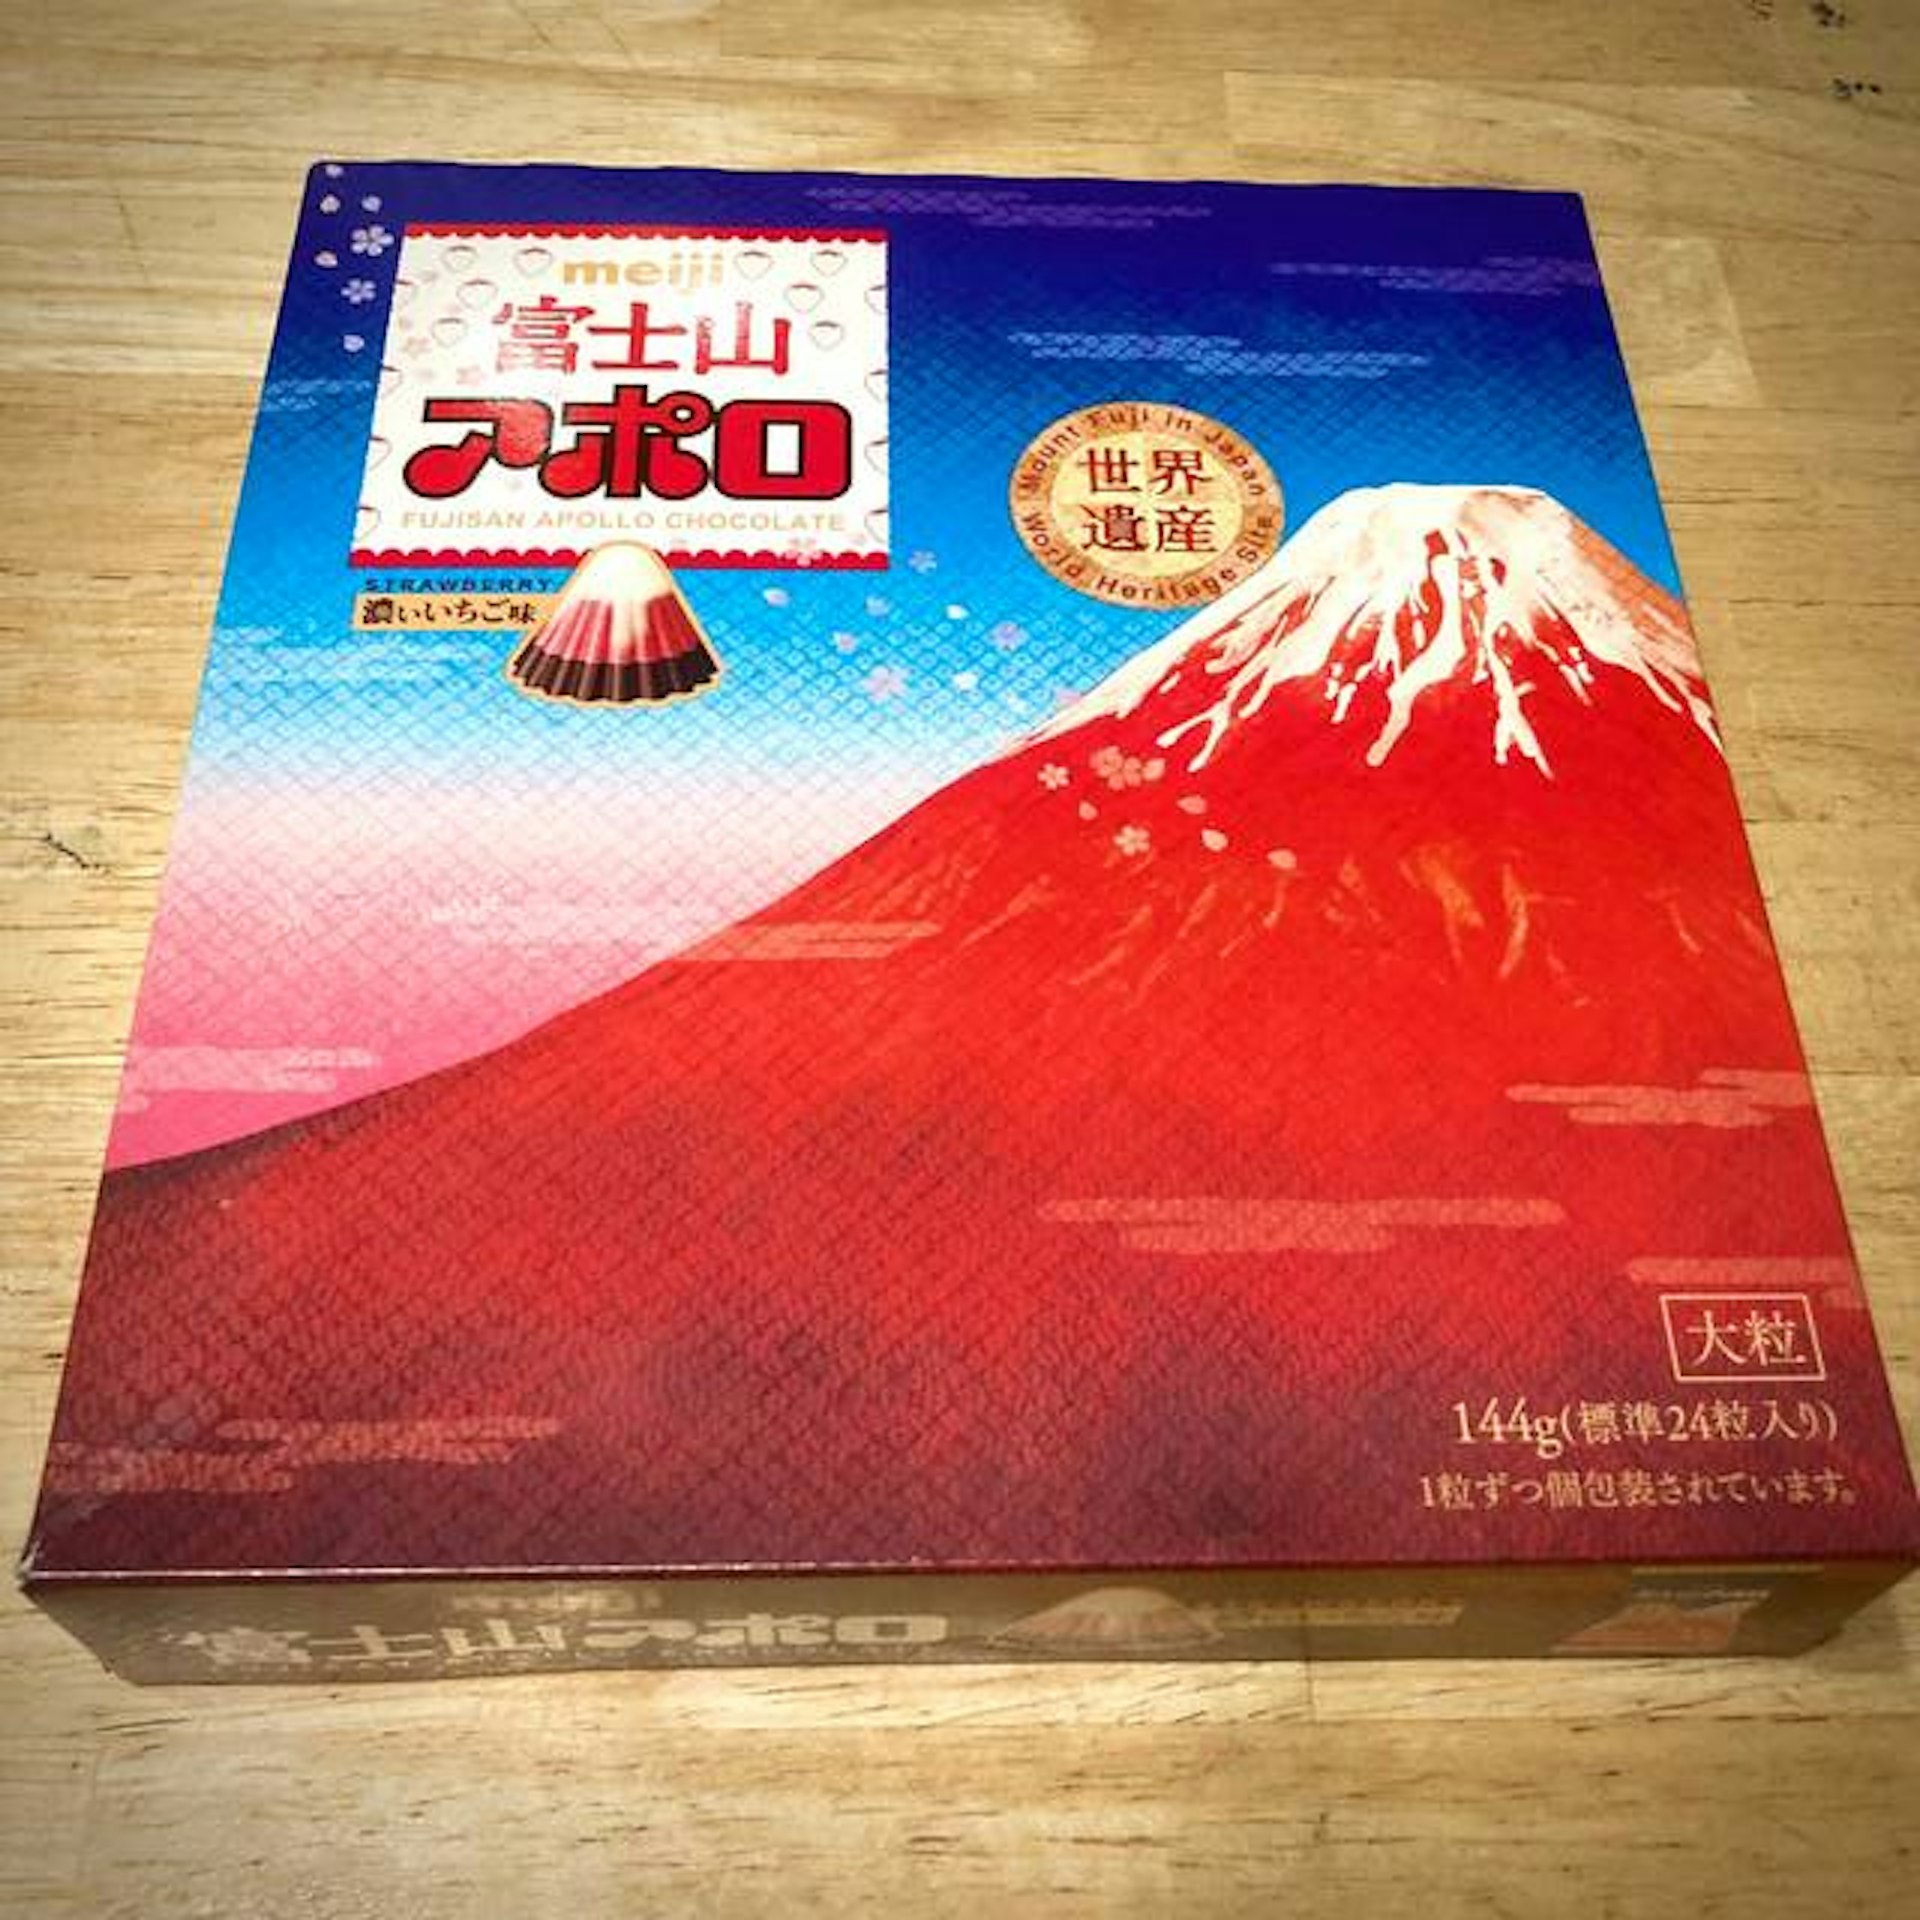 Meiji “Fuji Apollo” box and Yamanashi and Shizuoka